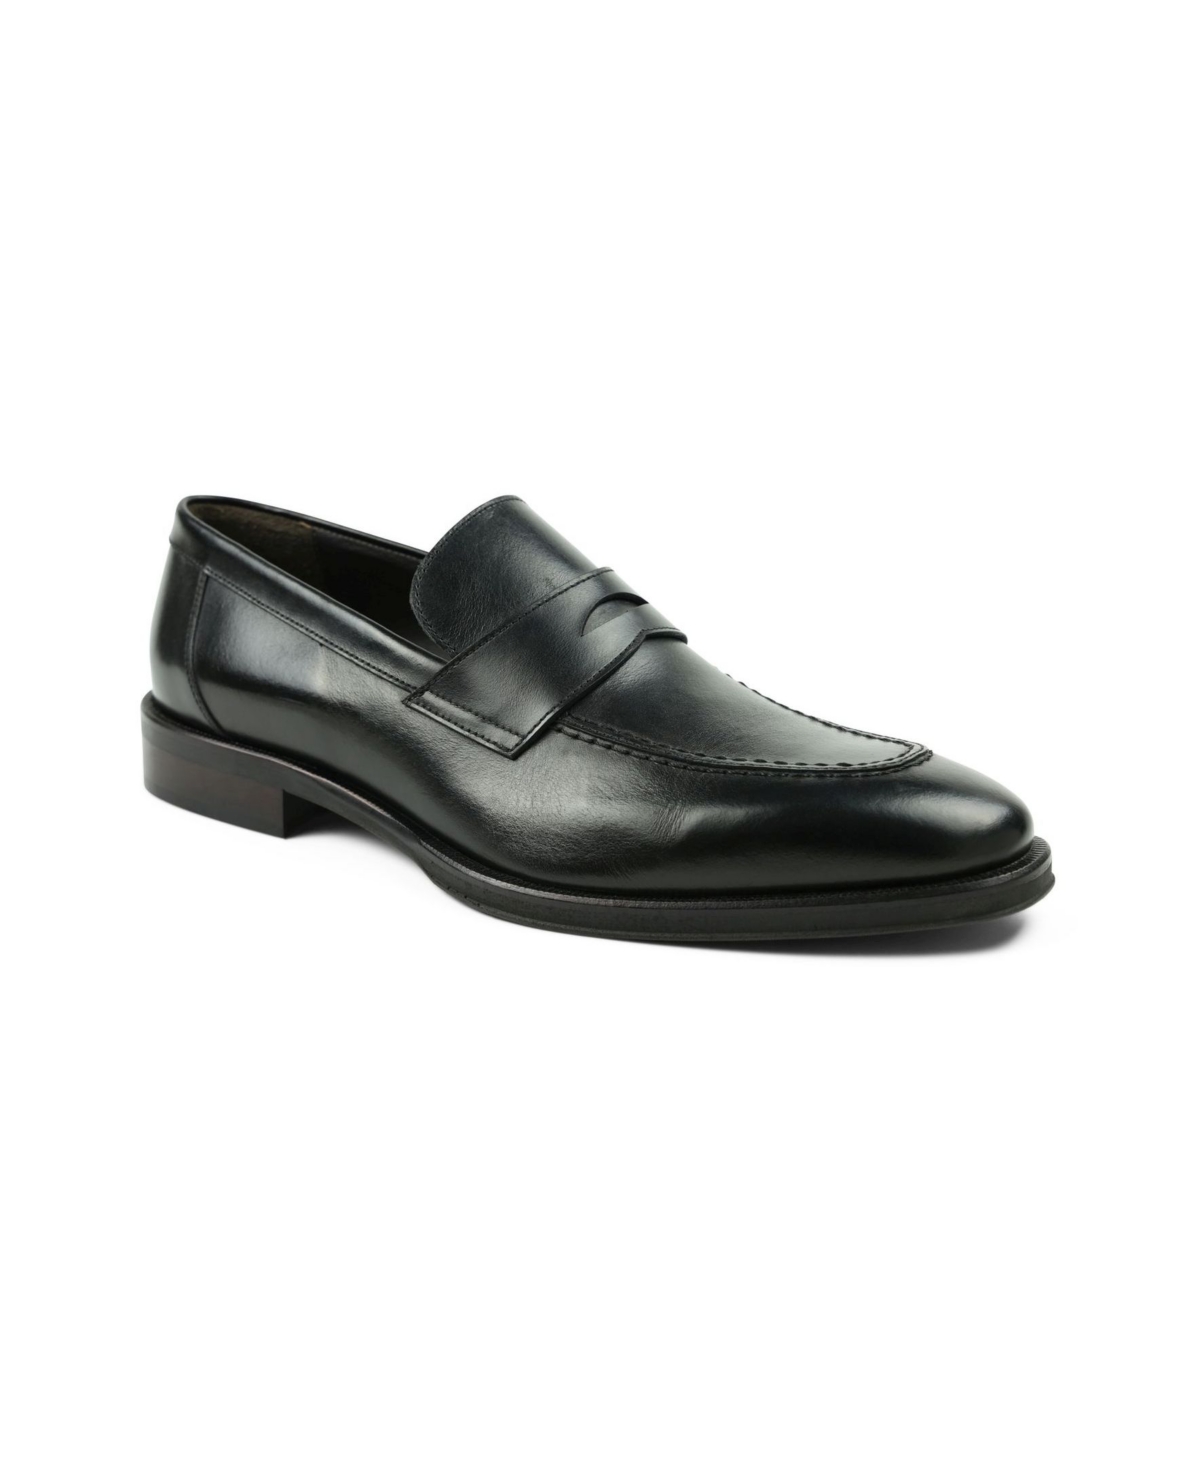 Bruno Magli Men's Arezzo Slip On Loafers Men's Shoes In Black/grey ...